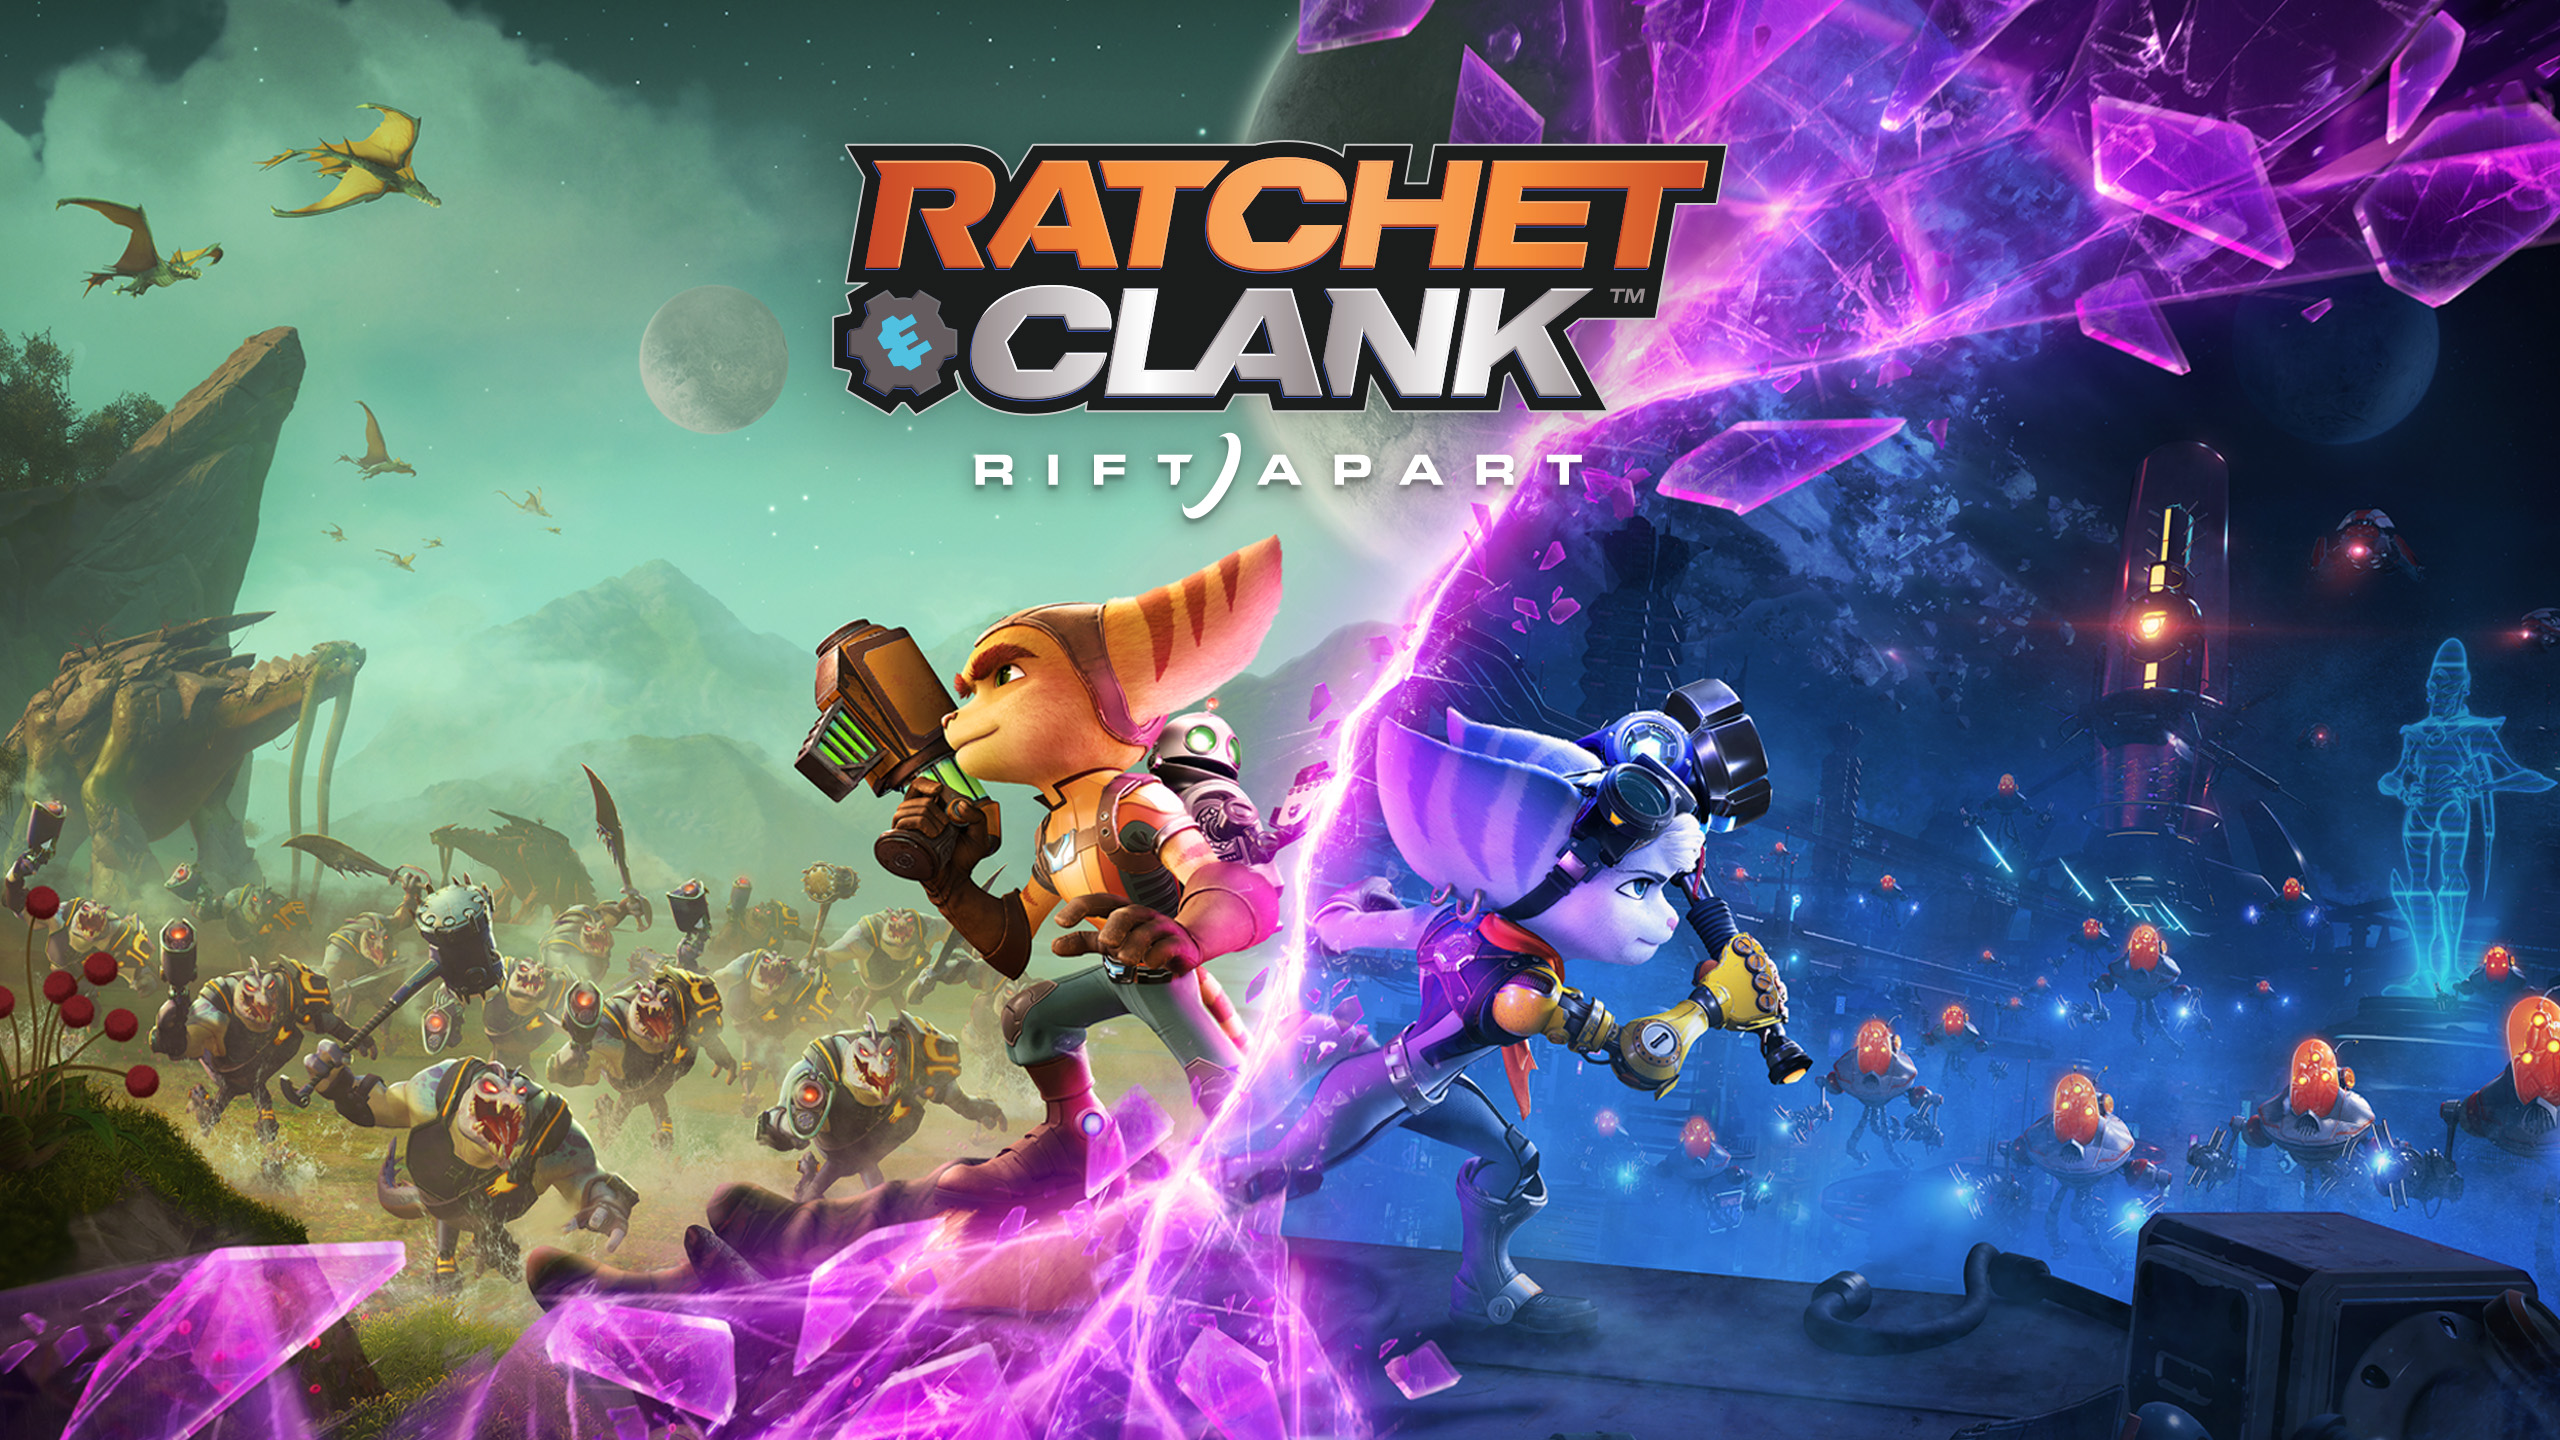 Ratchet & Clank: Rift Apart ИГРОМУЛЬФИЛЬМ ►#5 Прохождение без комментариев (Русская озвучка)